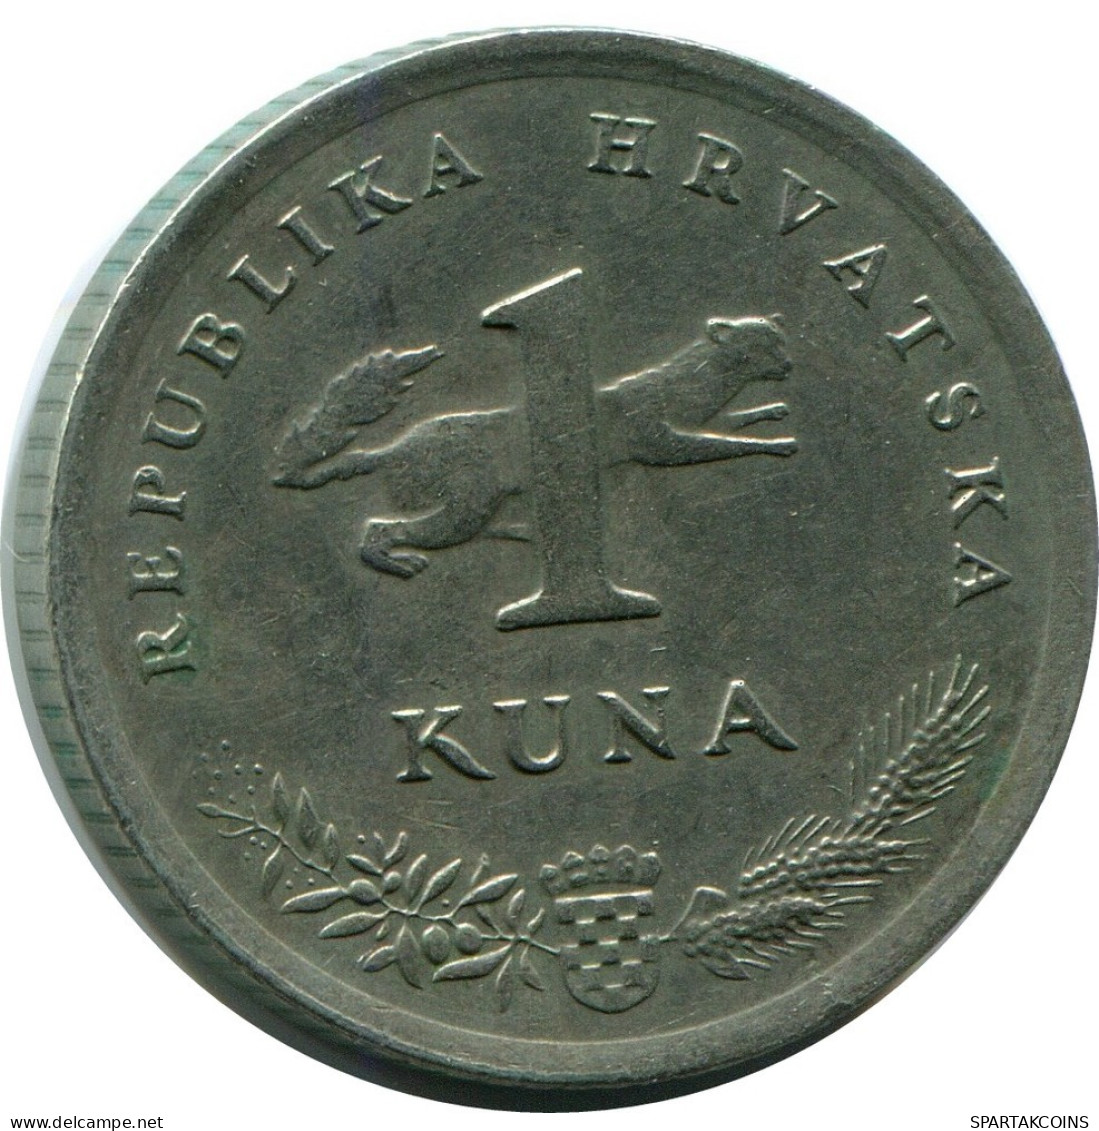 1 KUNA 1993 KROATIEN CROATIA Münze #AR929.D.A - Kroatië